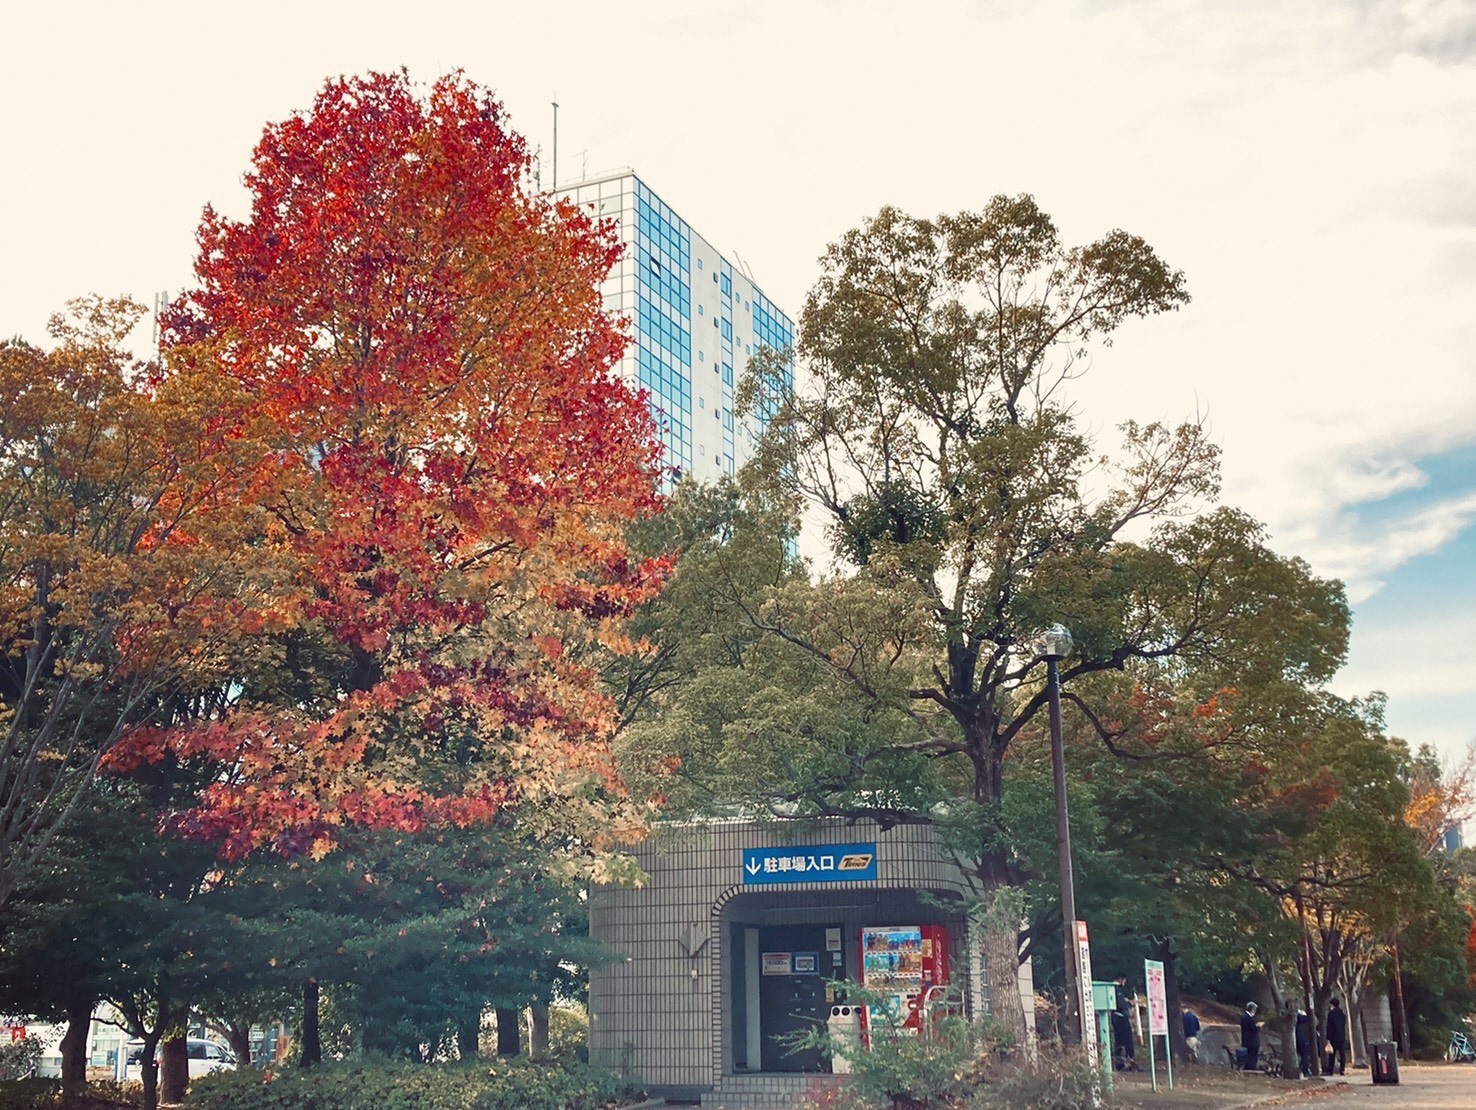 厚木中央公園の駐車場入り口横に立つ紅葉した樹木の後ろにビジネスタワーがのぞいている